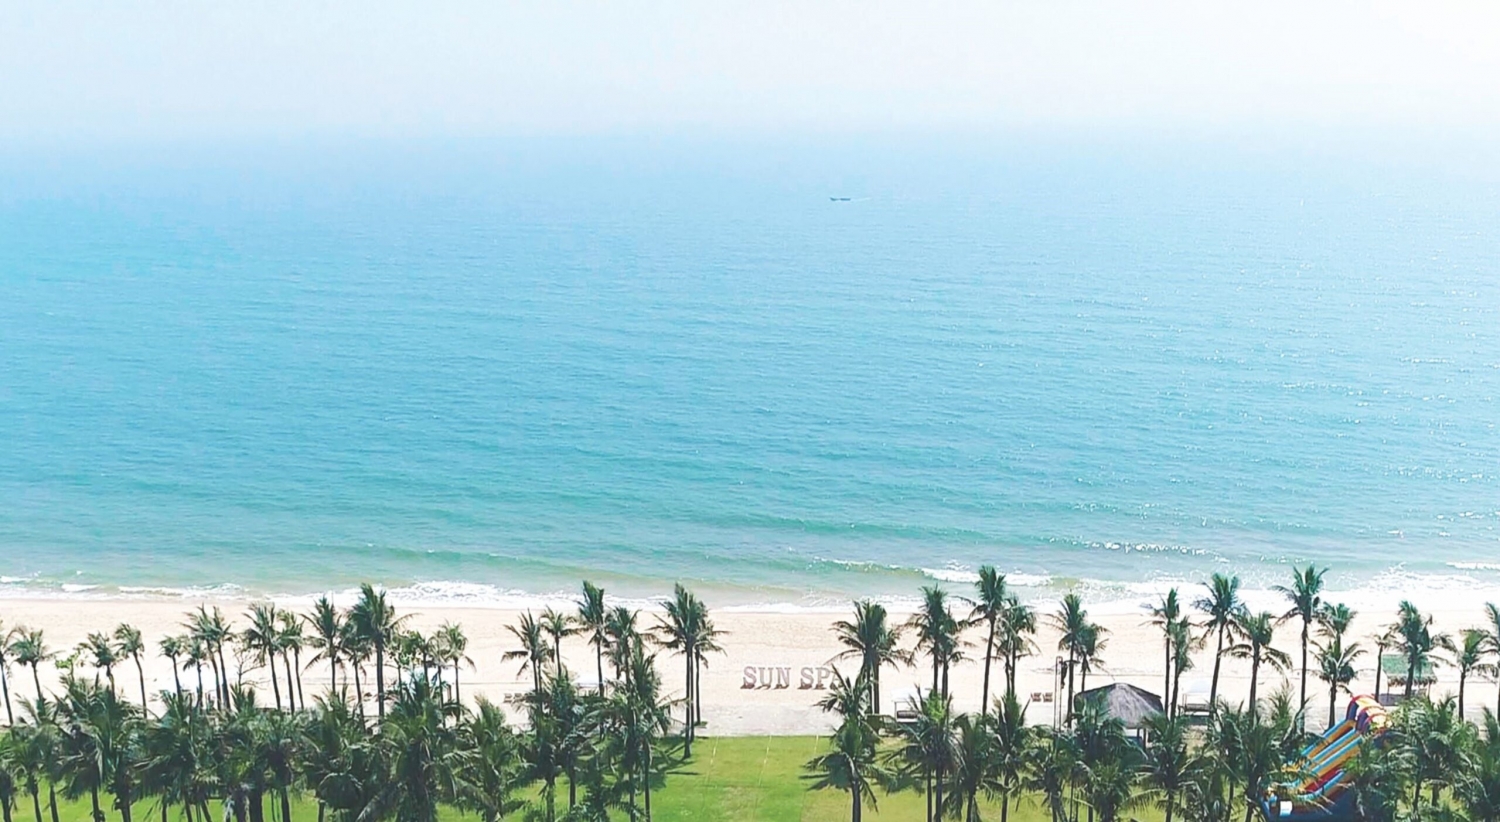 Vẻ đẹp hiền hòa của biển Bảo Ninh